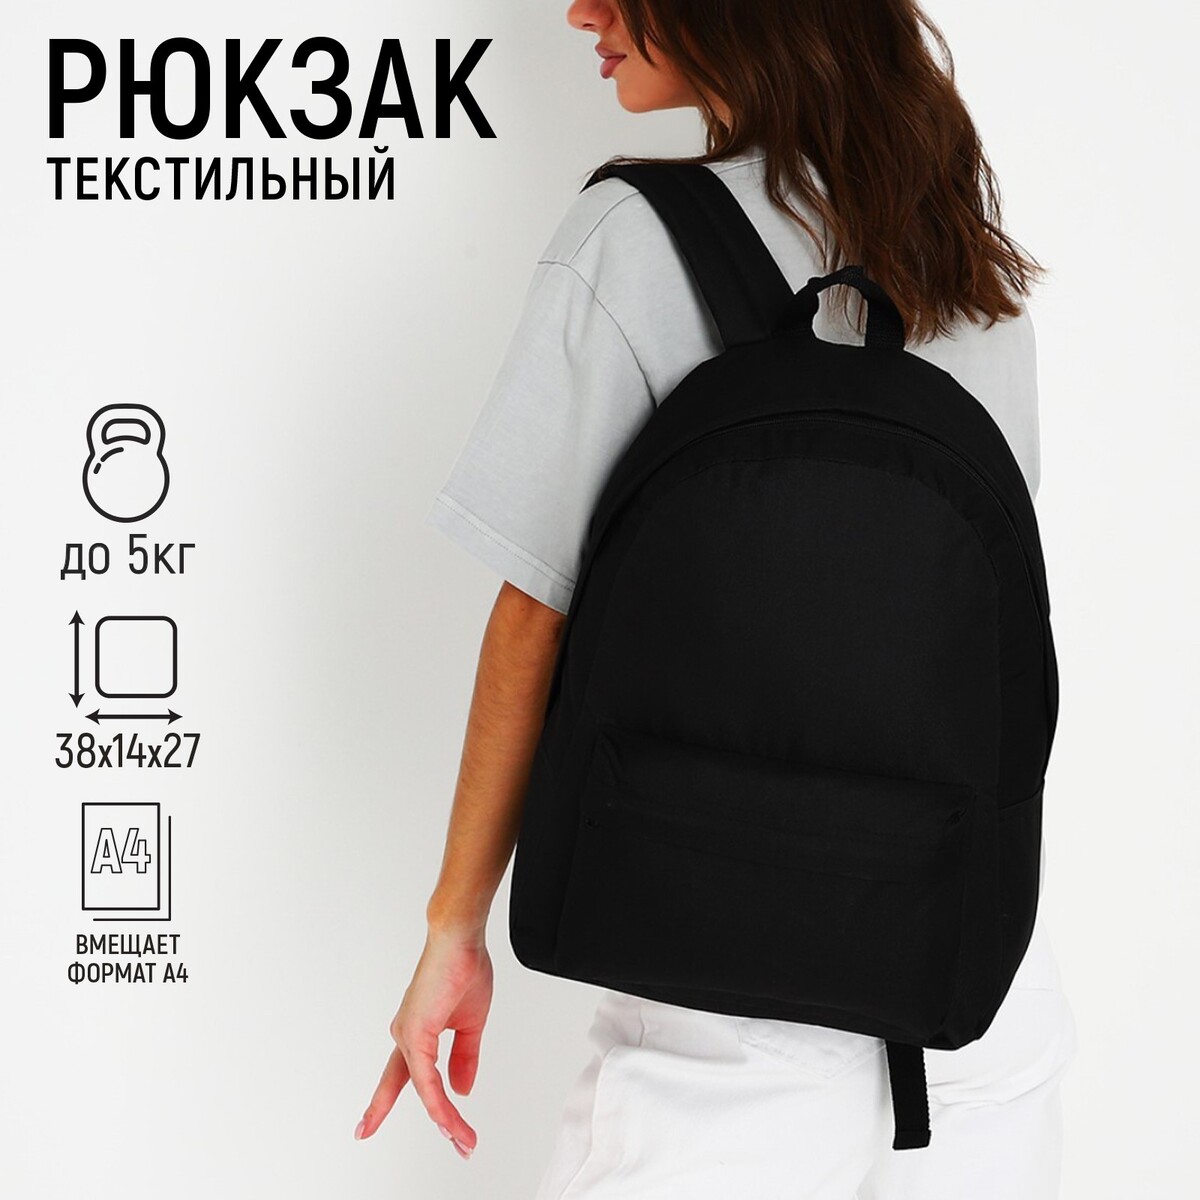 Рюкзак текстильный nazamok, 38х14х27 см, цвет черный